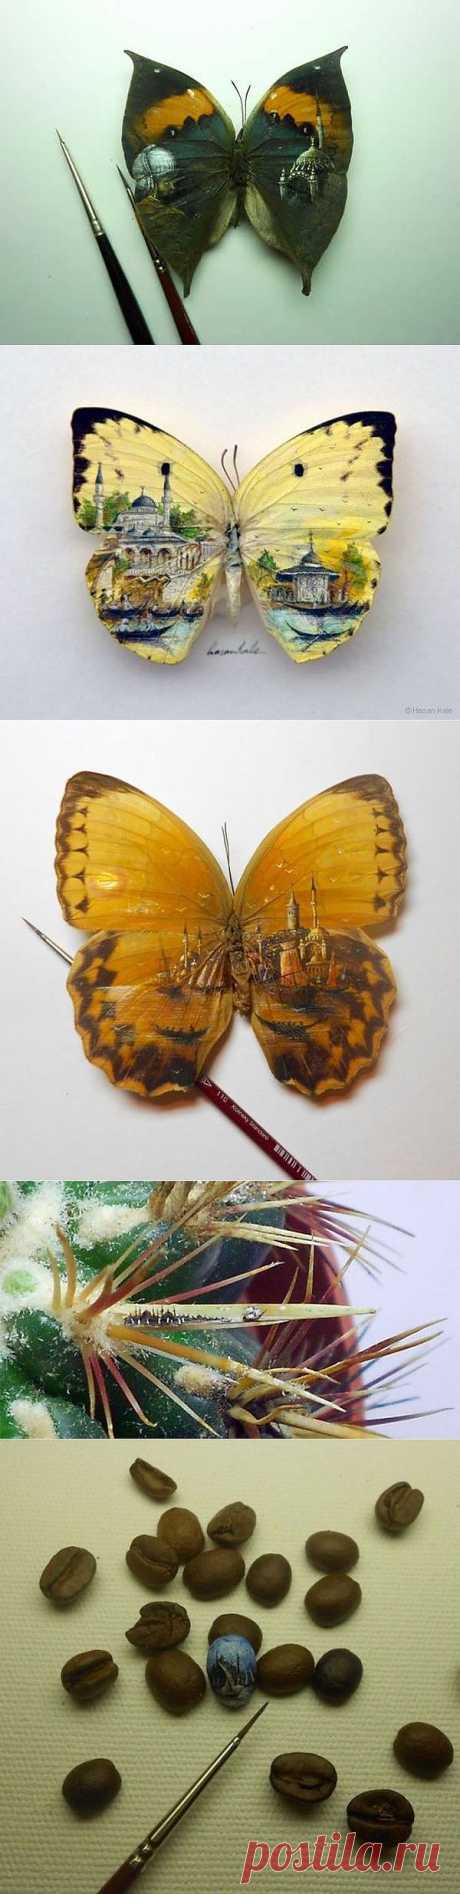 Миниатюрные картины Хасана Кале.
Турецкий художник Хасан Кале создает миниатюрные картины. Самое потрясающее в том, что полотнами для художественных произведений служат крылья бабочек, кофейные зерна и даже семена перца.